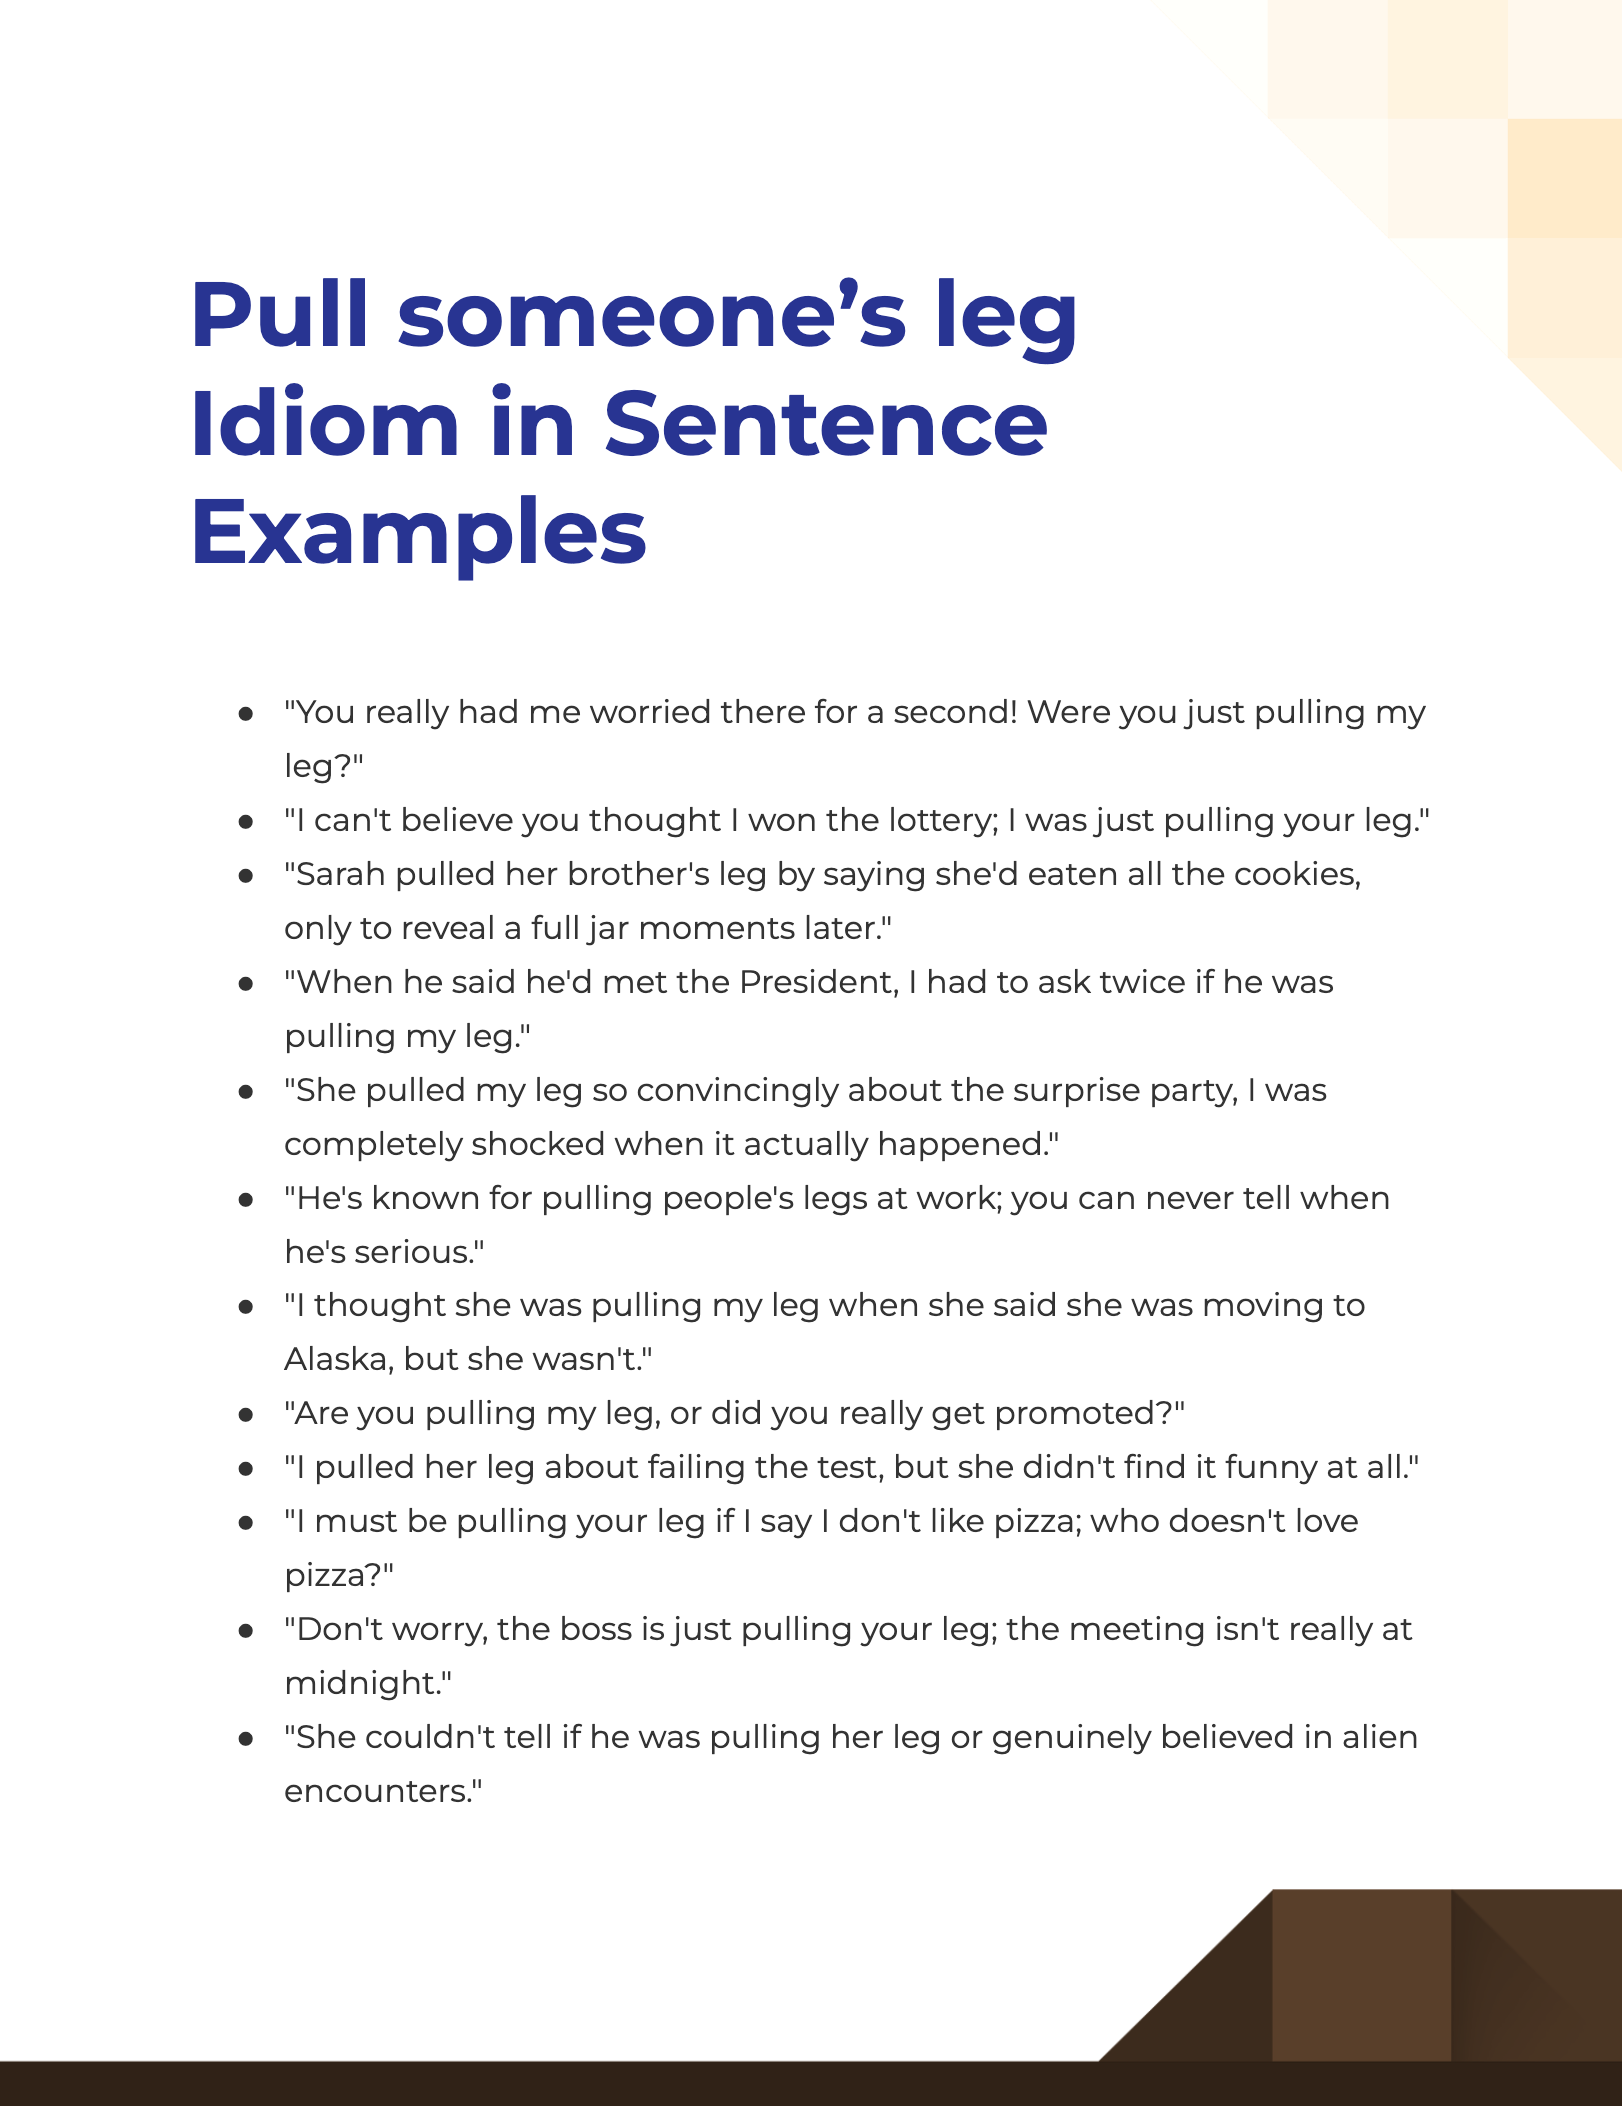 Pull someone’s leg Idiom